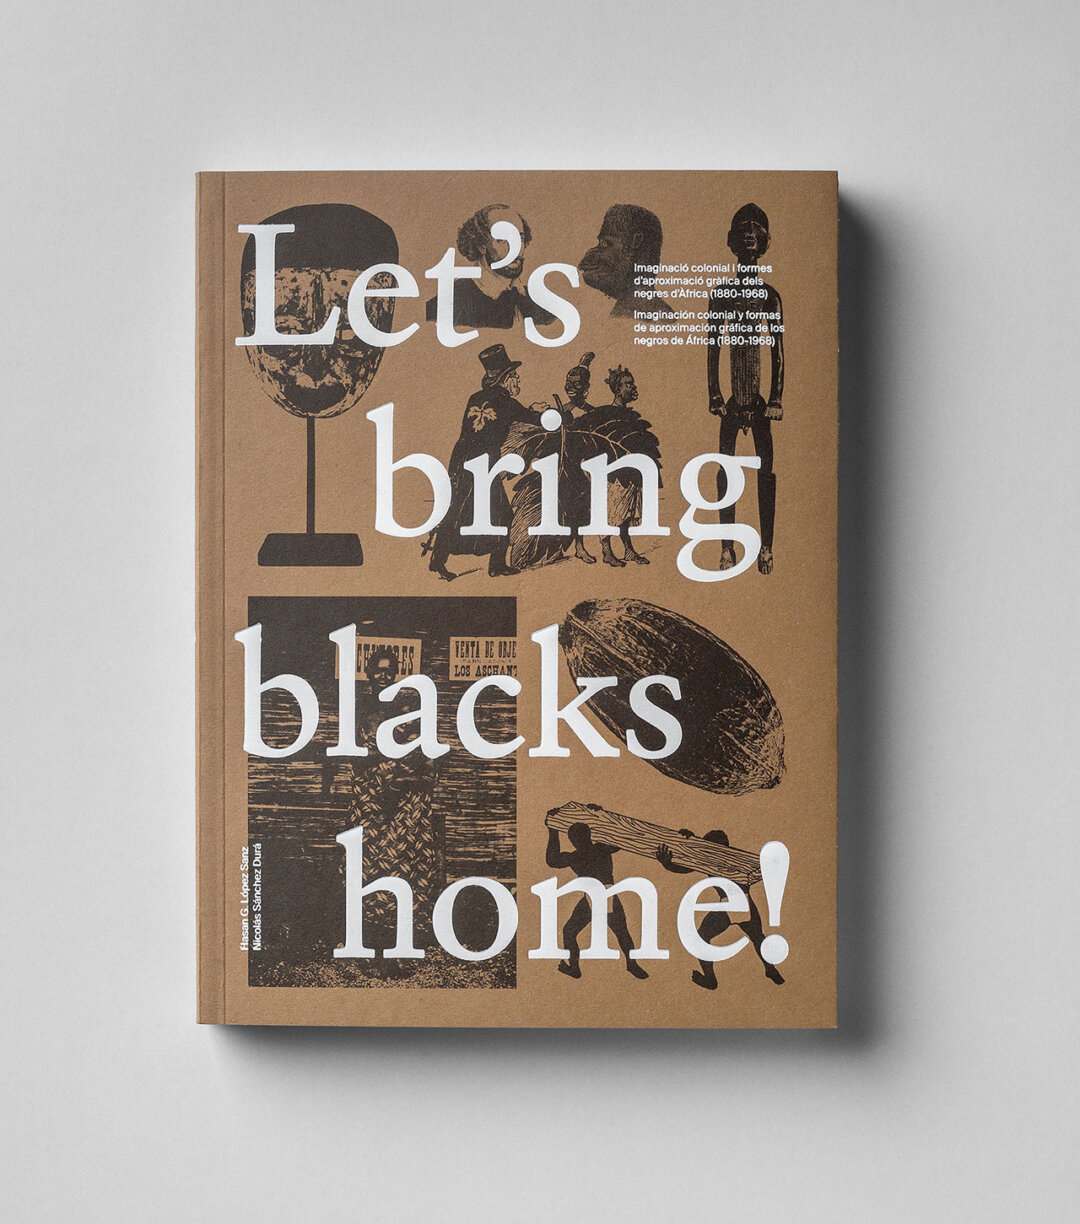 Let’s bring blacks home!